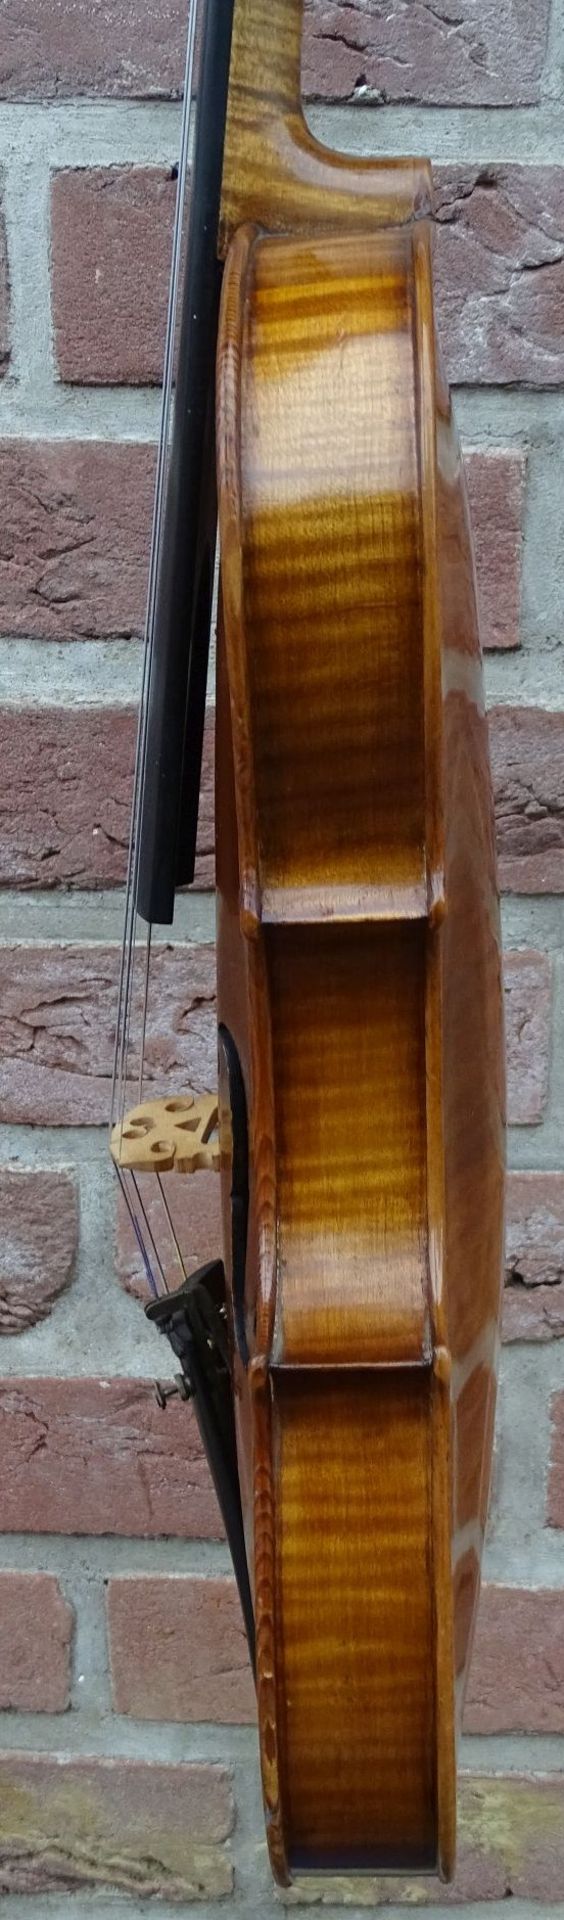 alte Geige mit Bogen in Holz-Geigenkasten, guter Zustand, L-60 cm - Bild 7 aus 10